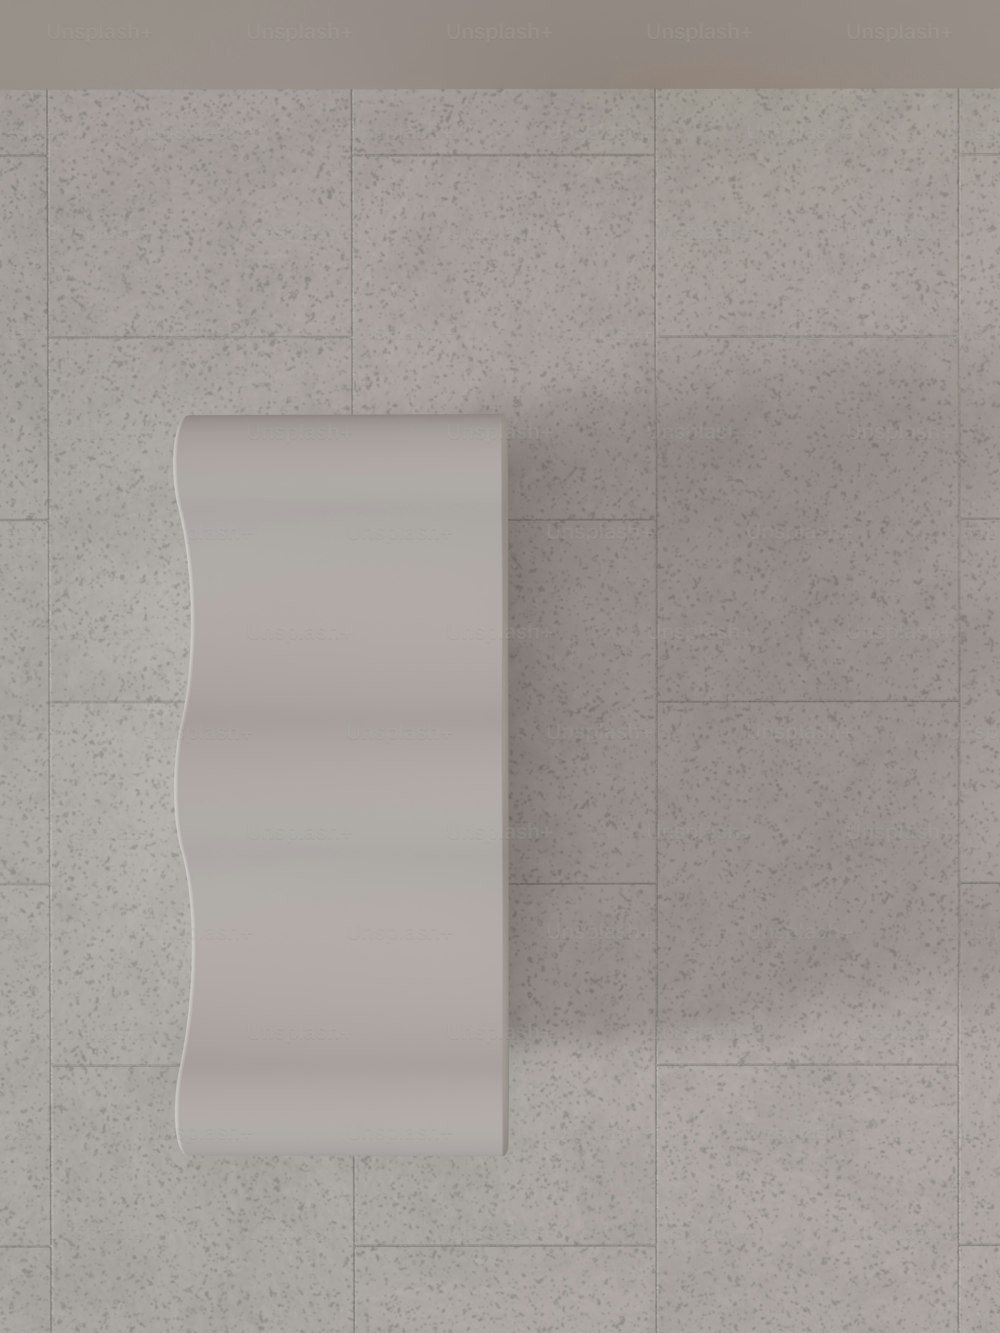 Eine Draufsicht auf ein weißes, an der Wand montiertes Urinal